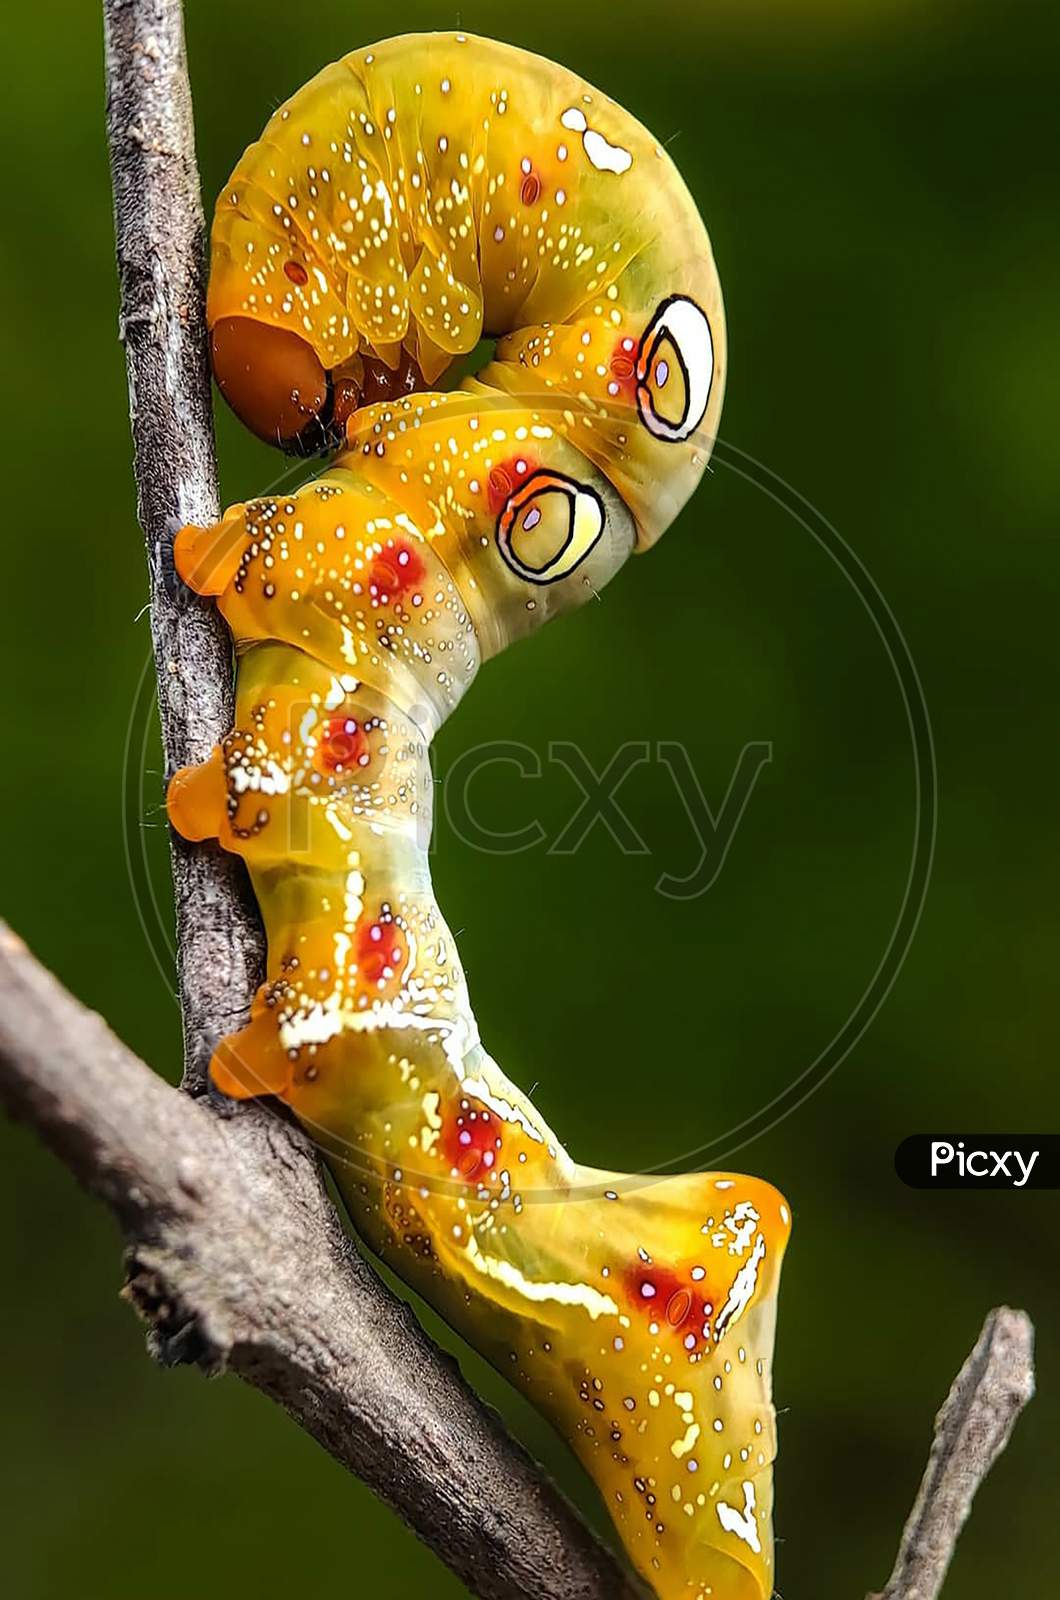 caterpillar image